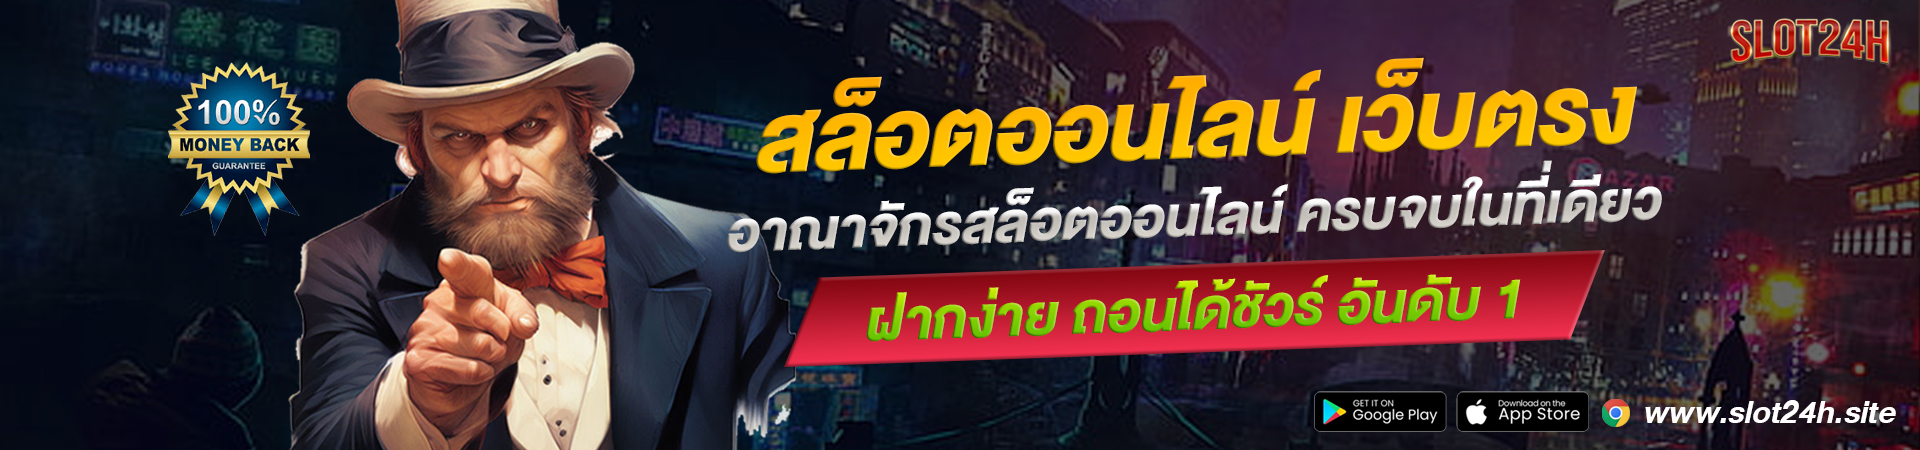 slot24h เว็บสล็อตออนไลน์ ที่อัตราจ่ายสูงที่สุดในไทย